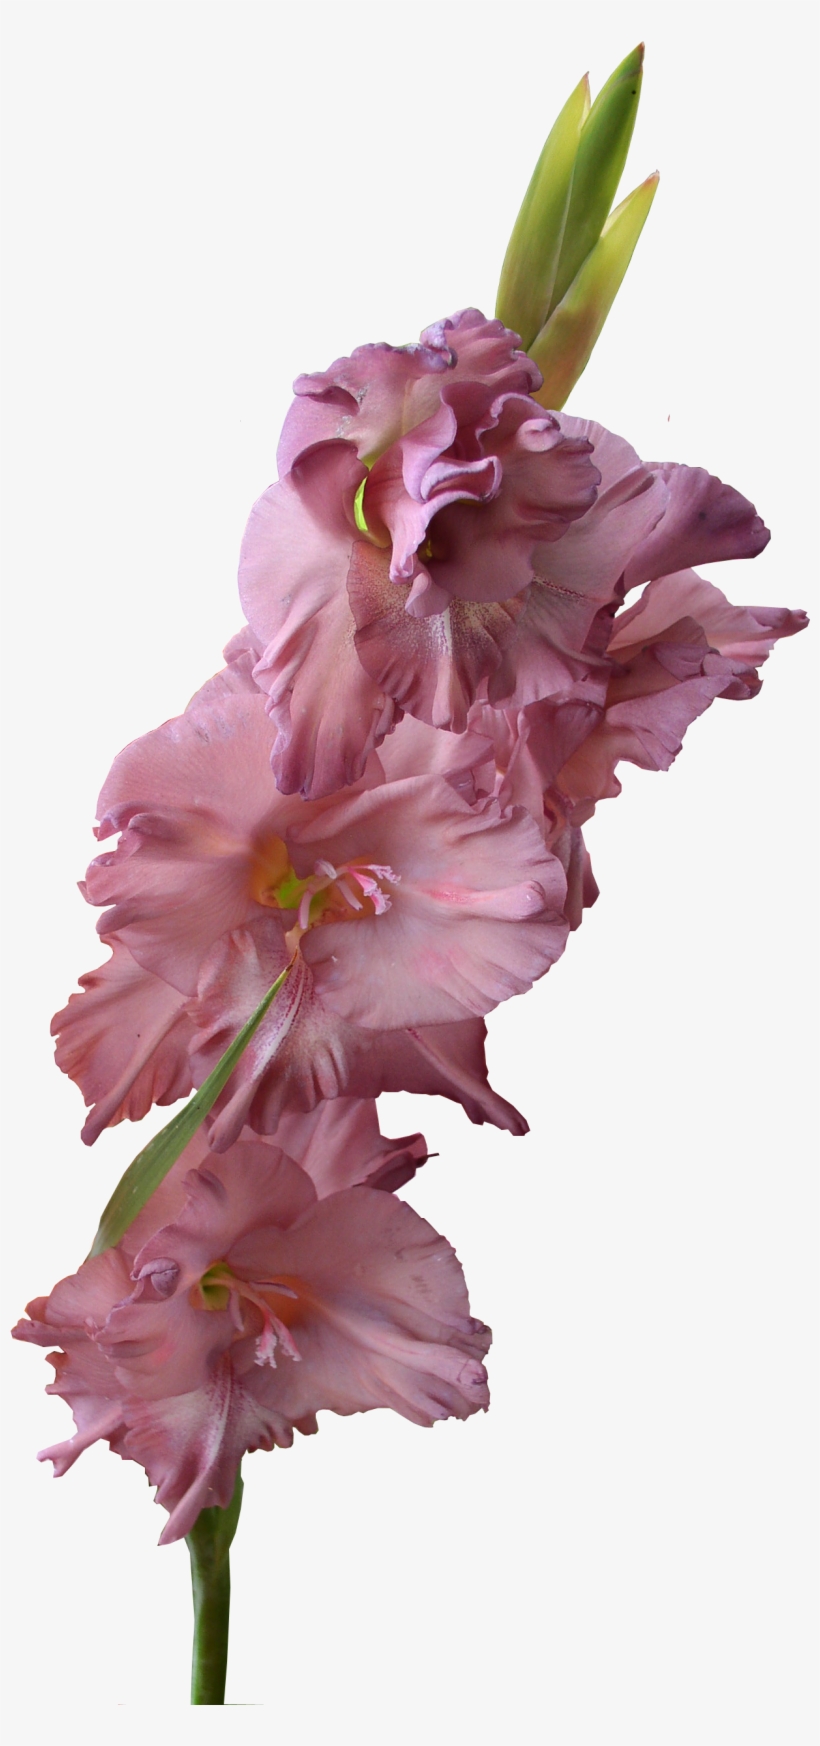 Gladiolus Png Pic - Gladiolus Flower Transparent Background, transparent png #3121581